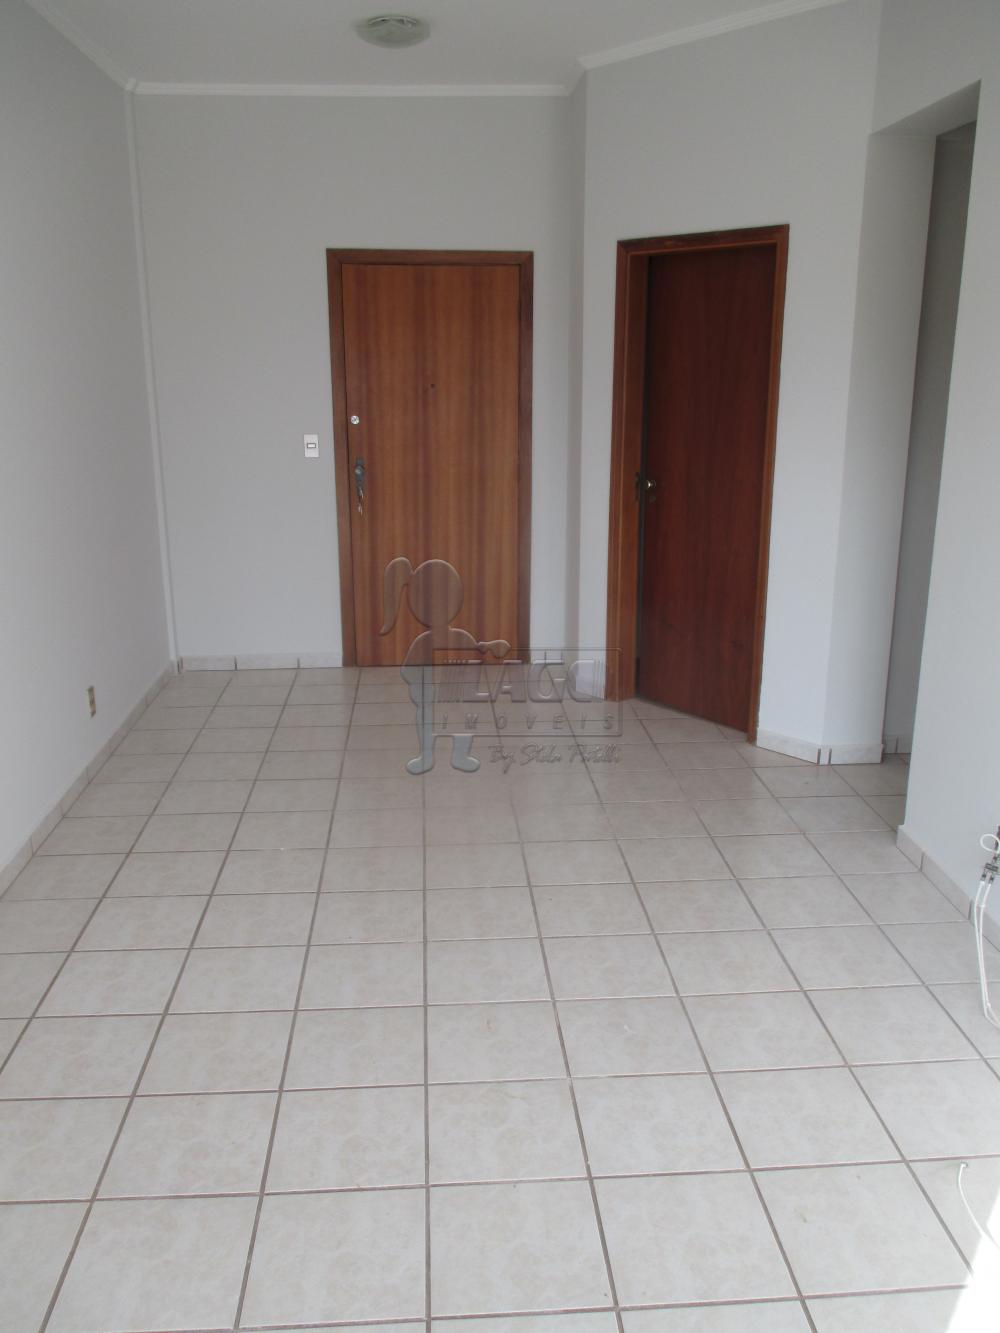 Alugar Apartamento / Padrão em Ribeirão Preto R$ 790,00 - Foto 4